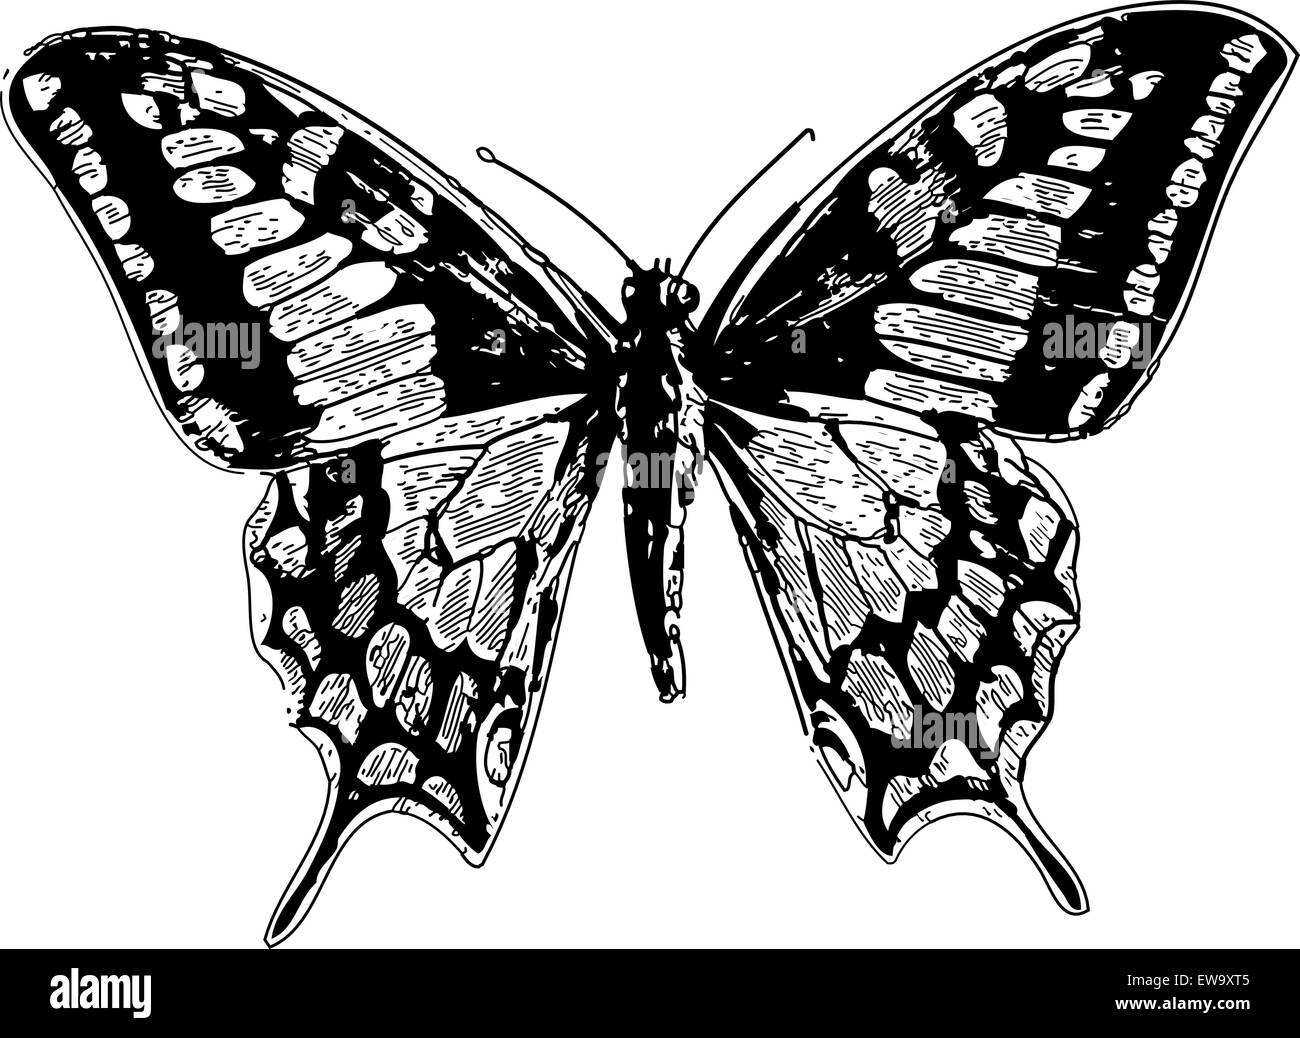 Alte eingravierten Abbildung einer alten Welt Swallowtail oder Pieris brassicae, auf weissem isoliert. Live verfolgt. Aus dem Trousset Enzyklopädie, Paris 1886 - 1891. Stock Vektor